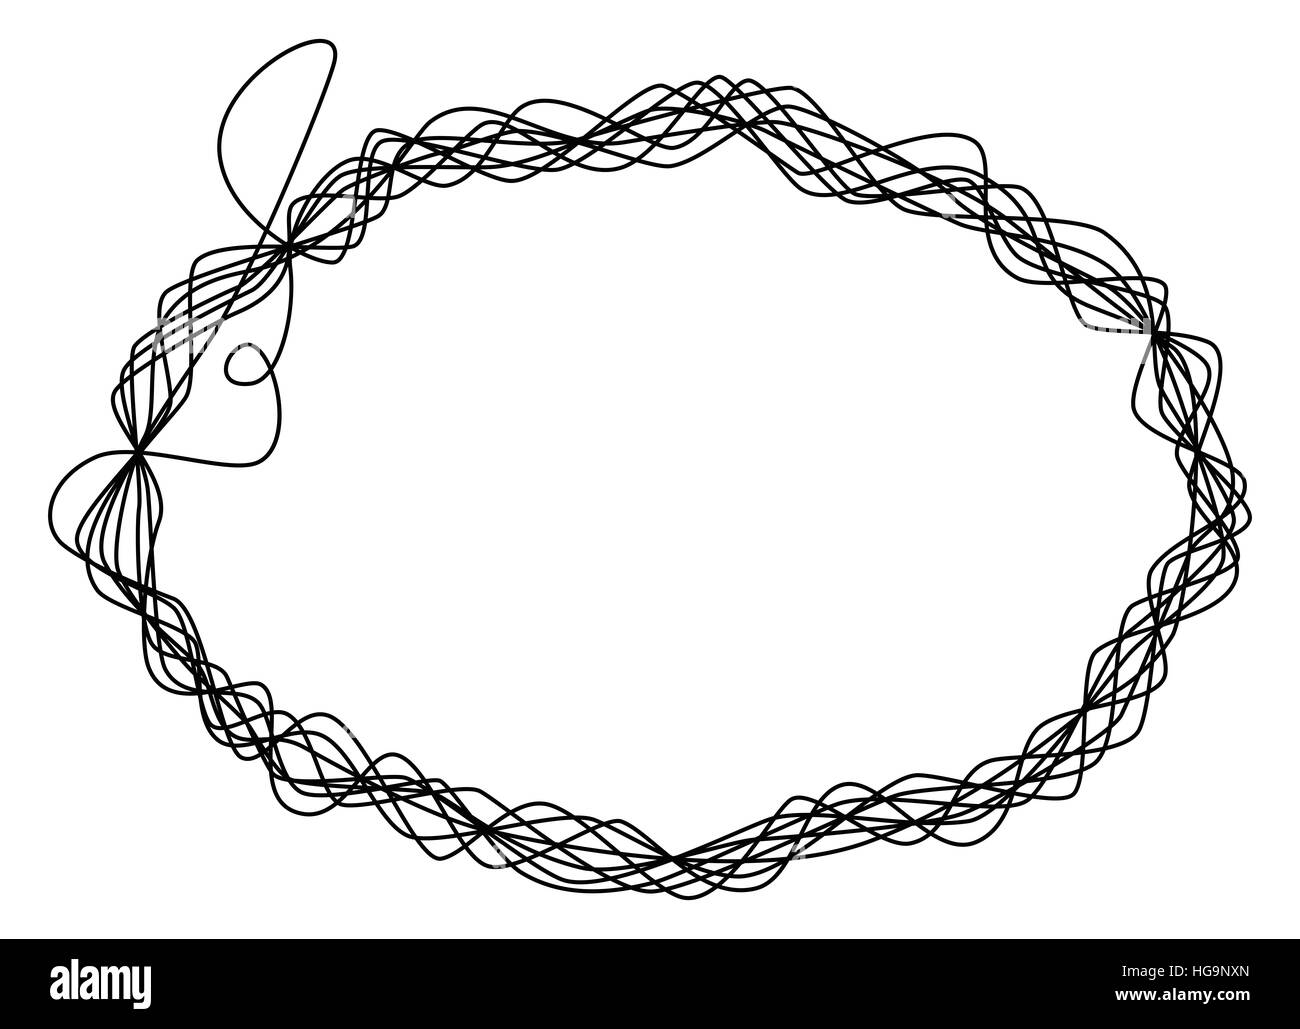 Subproceso único fotograma. Una sola línea es ocho veces envuelto alrededor y conformar una elipse como una escultura de alambre. Foto de stock